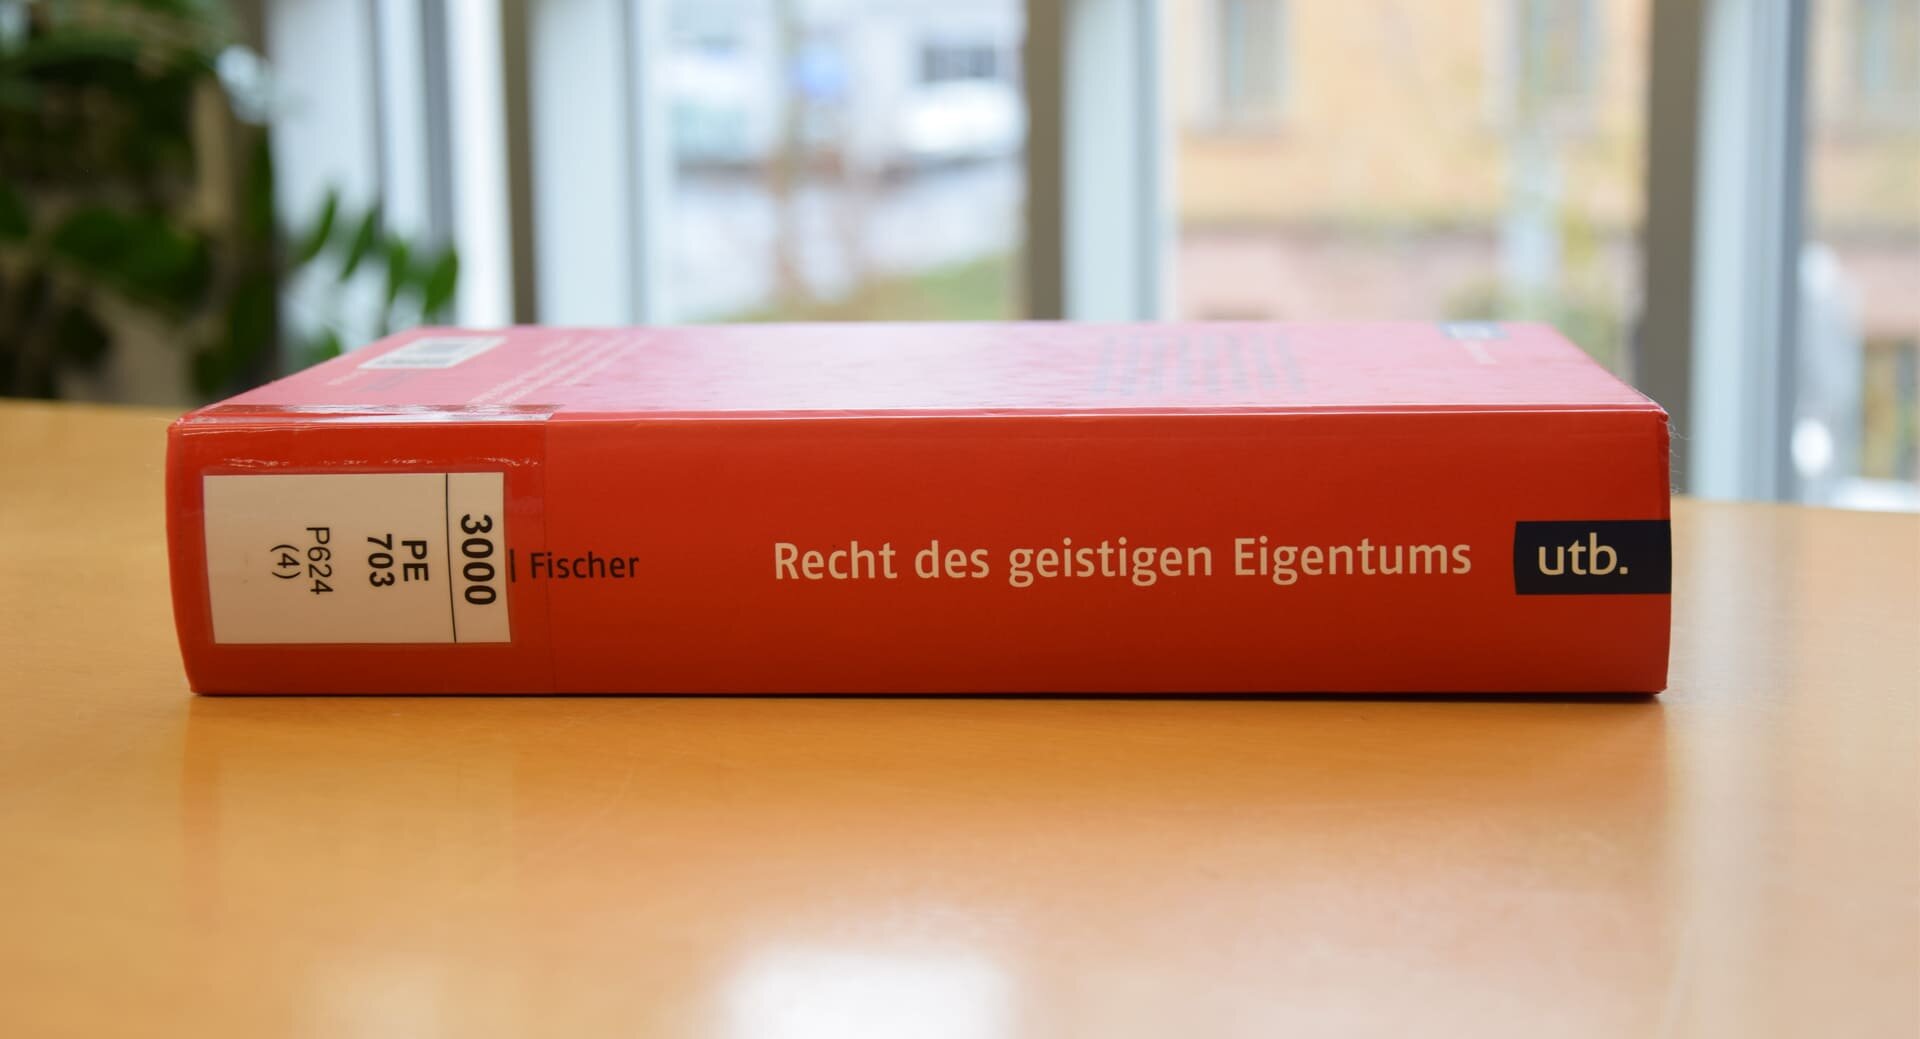 Rotes Buch auf Tisch liegend in Bibliothek, Recht des geistigen Eigentums